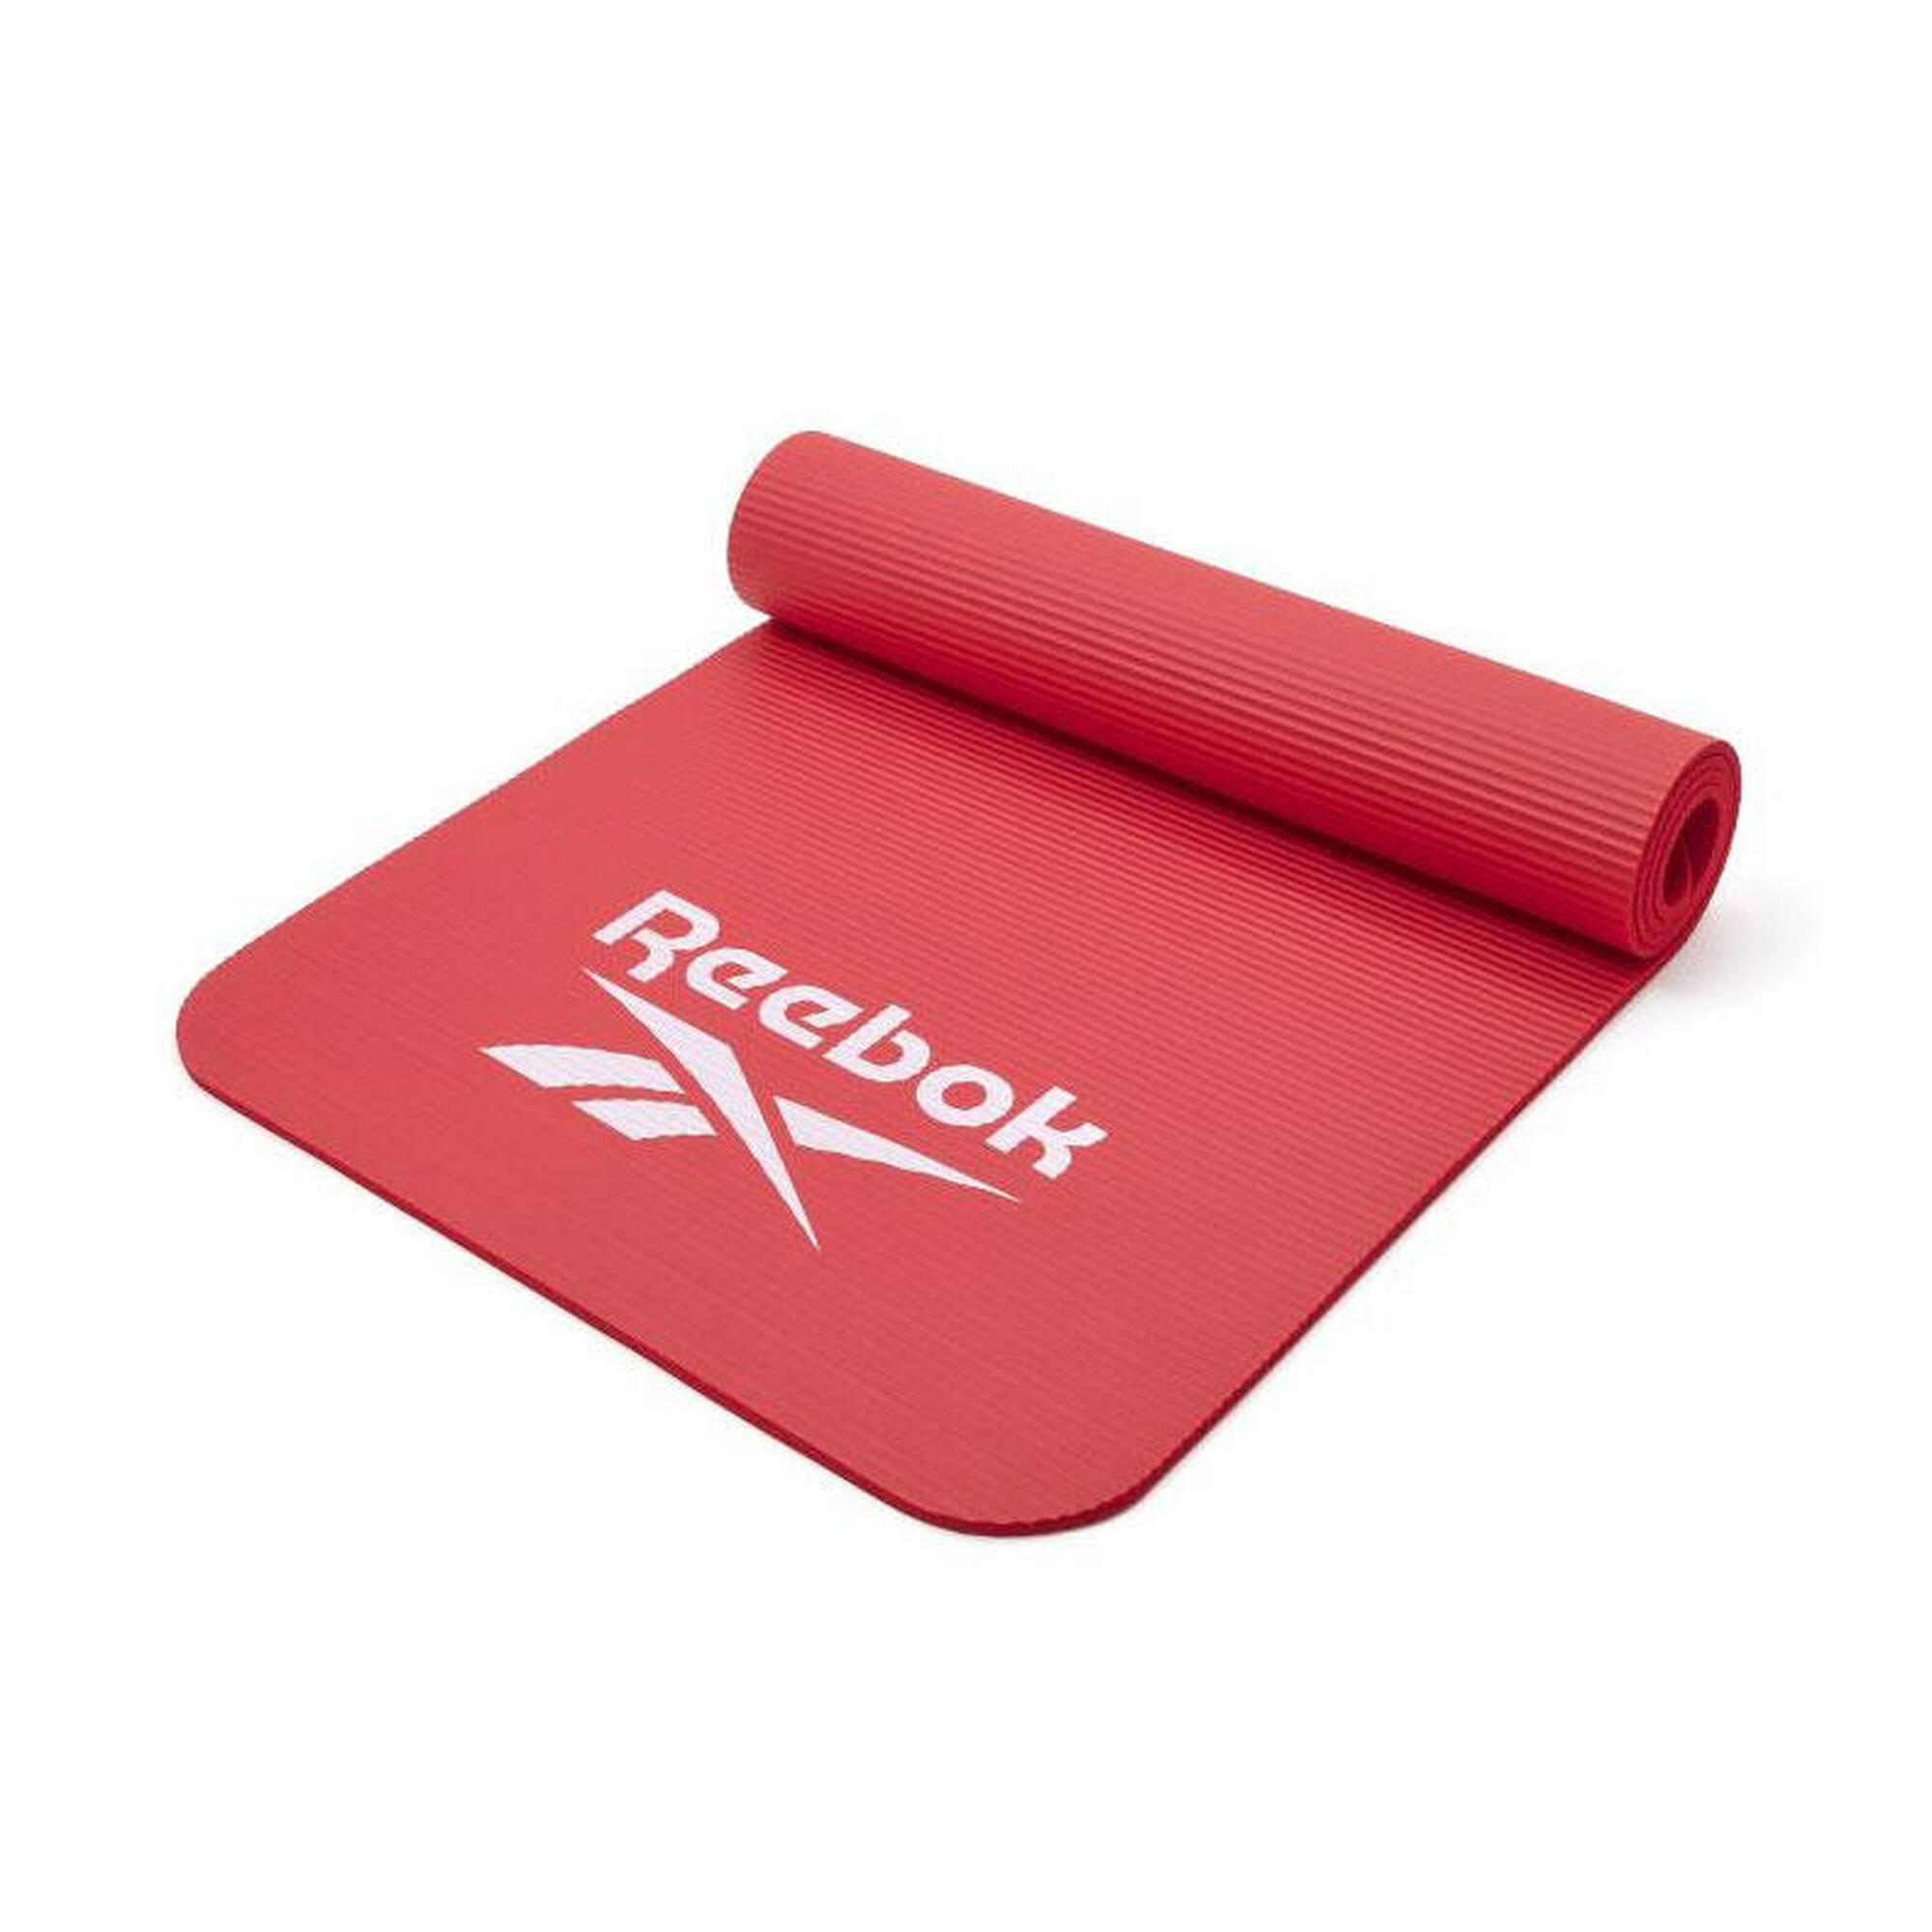 Tappetino da allenamento Reebok - 7 mm Colore: Rosso